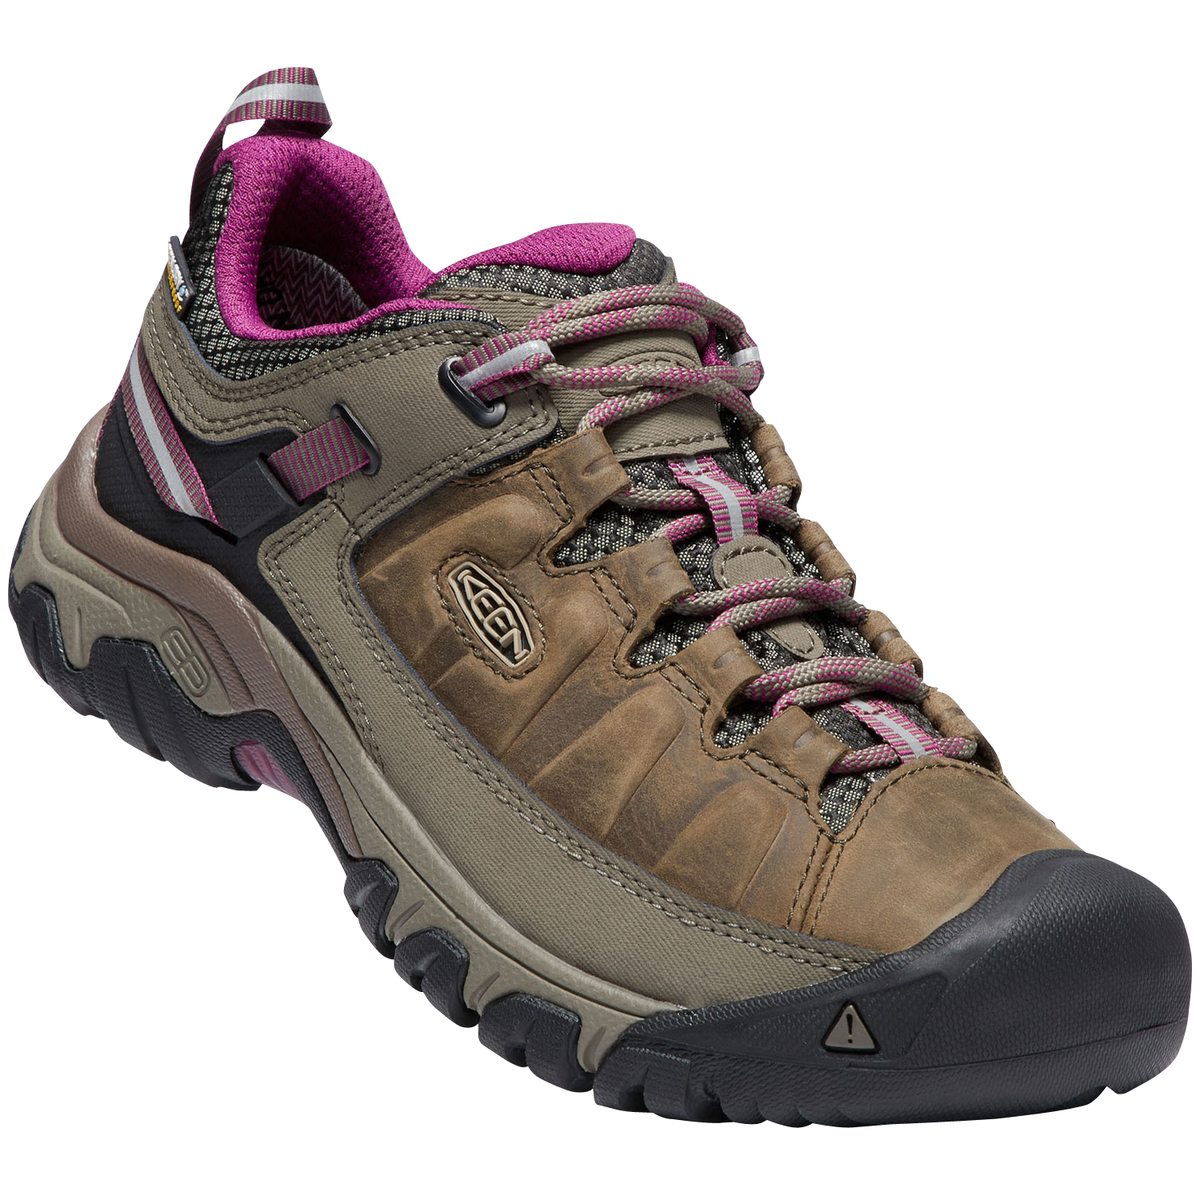 KEEN Women's Targhee III Waterproof Low Hiking Shoes - Weiss - Size 9